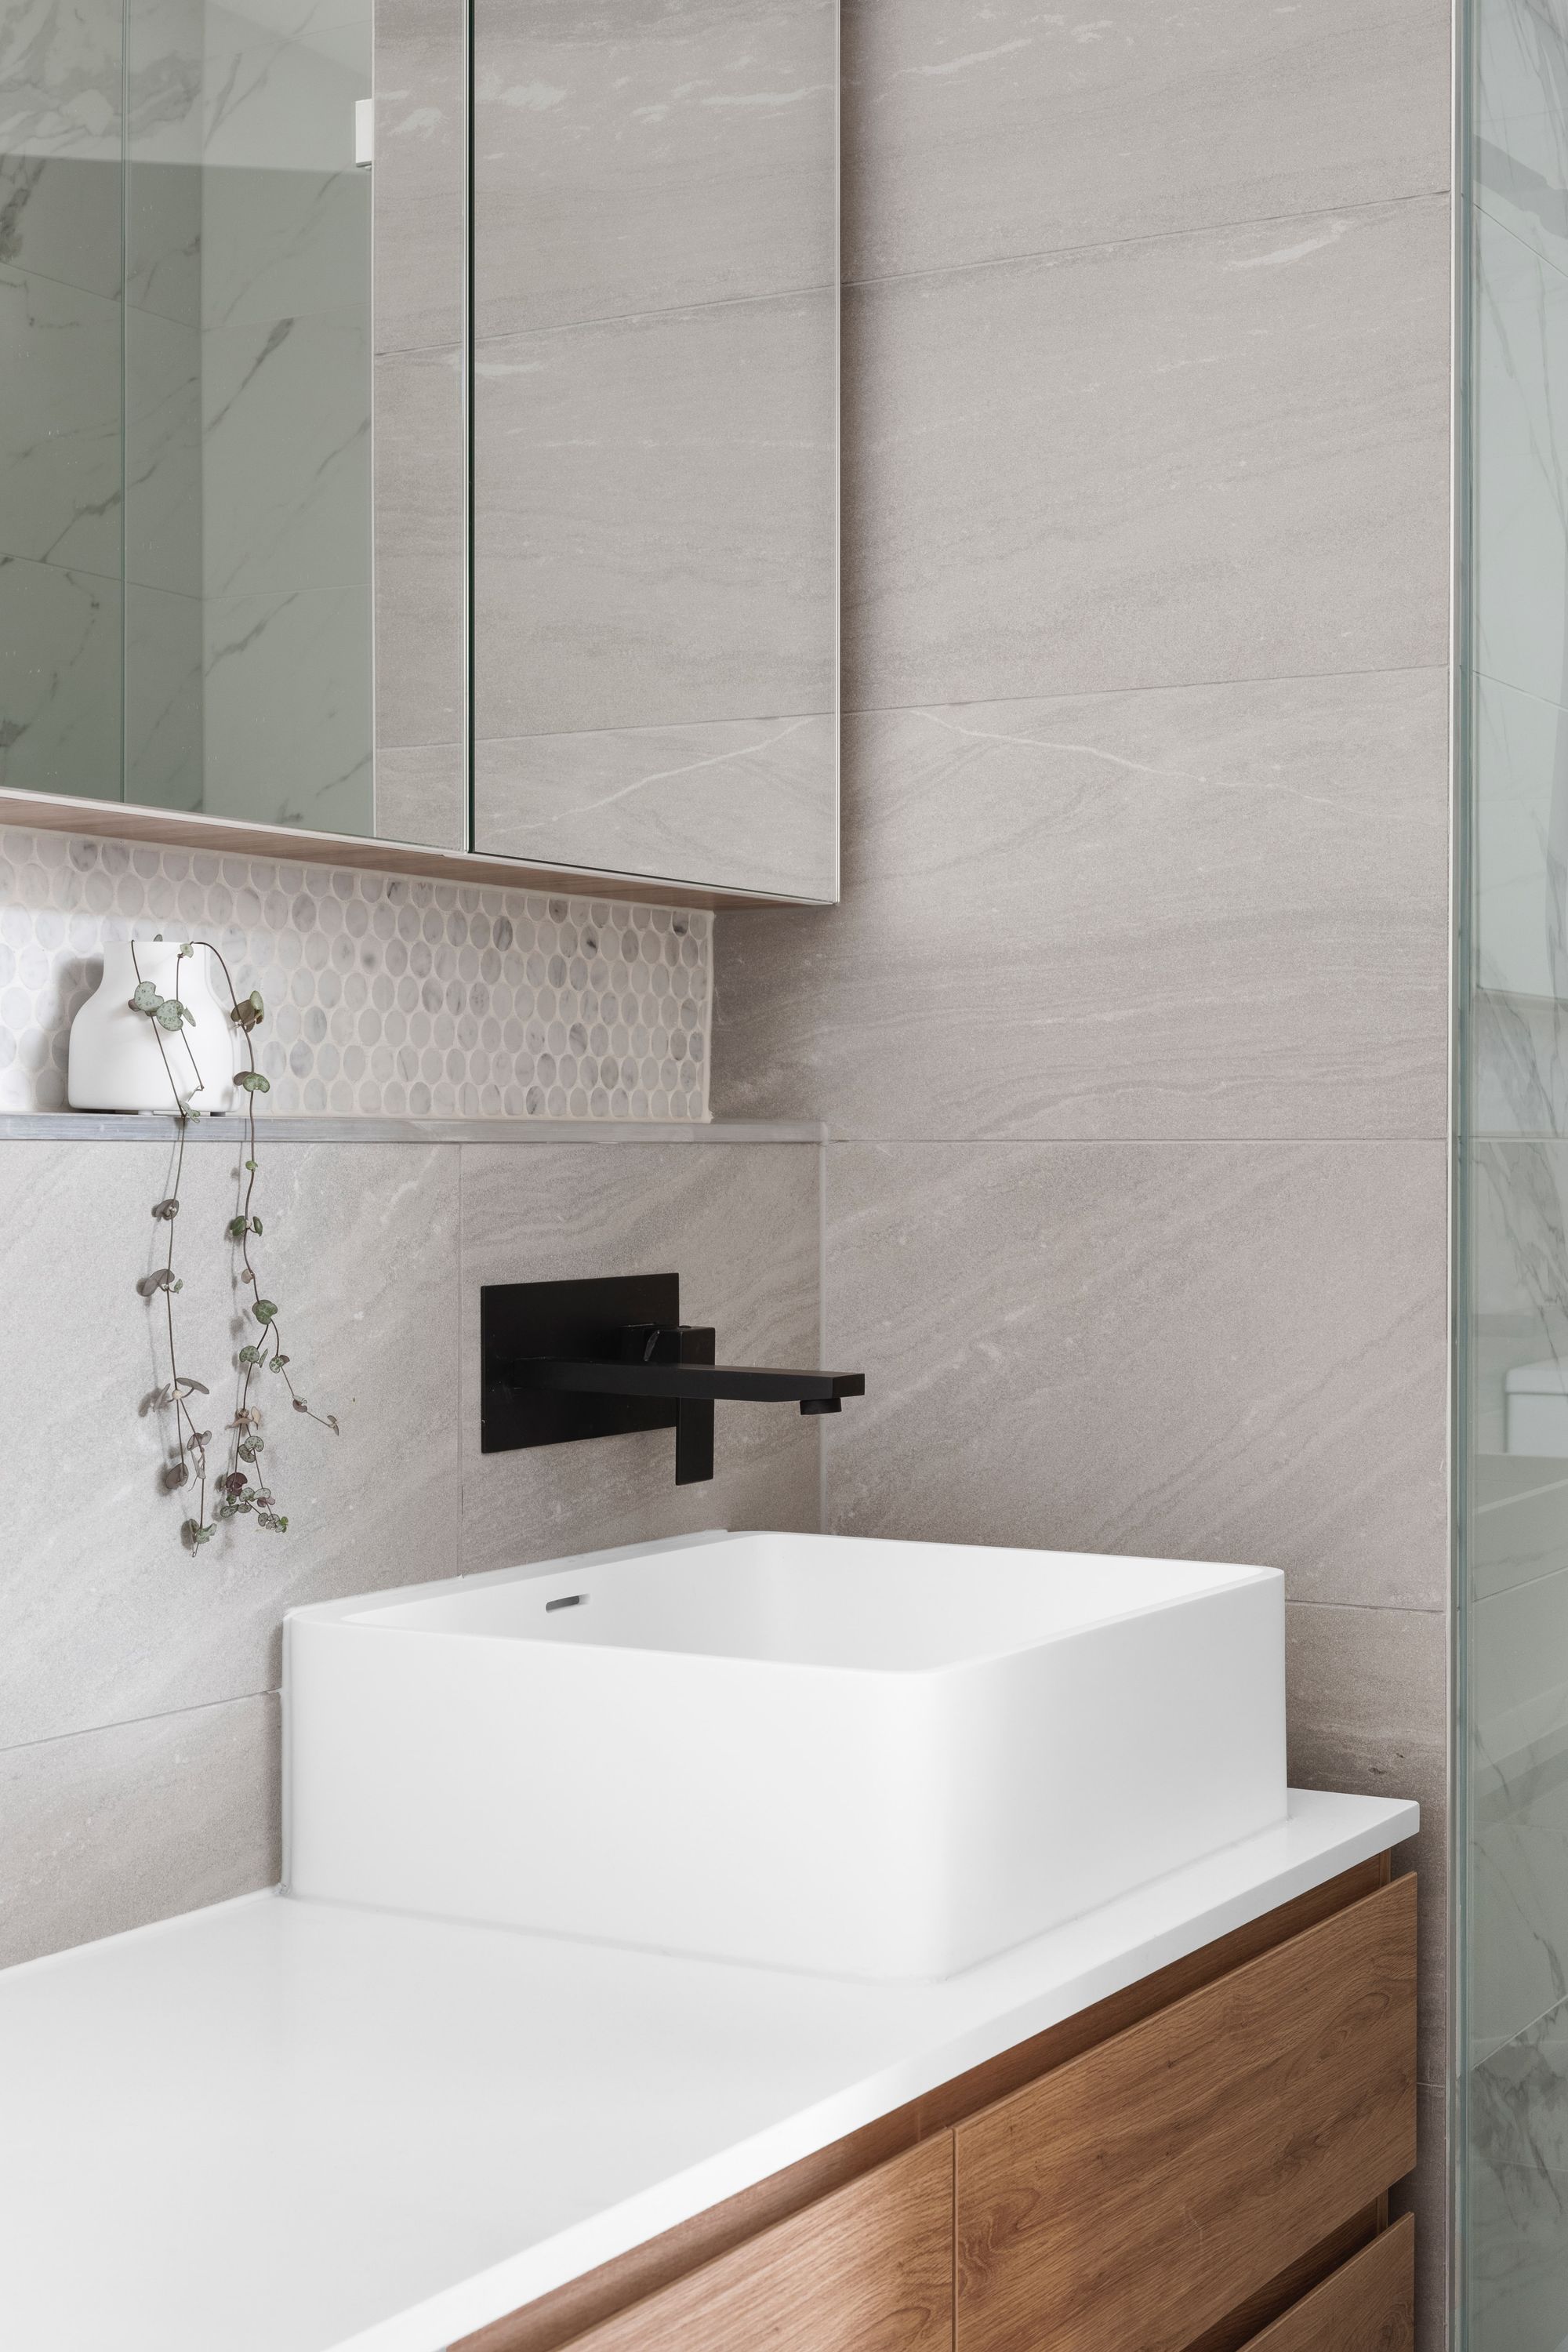 Diseño cuartos de baño minimalista